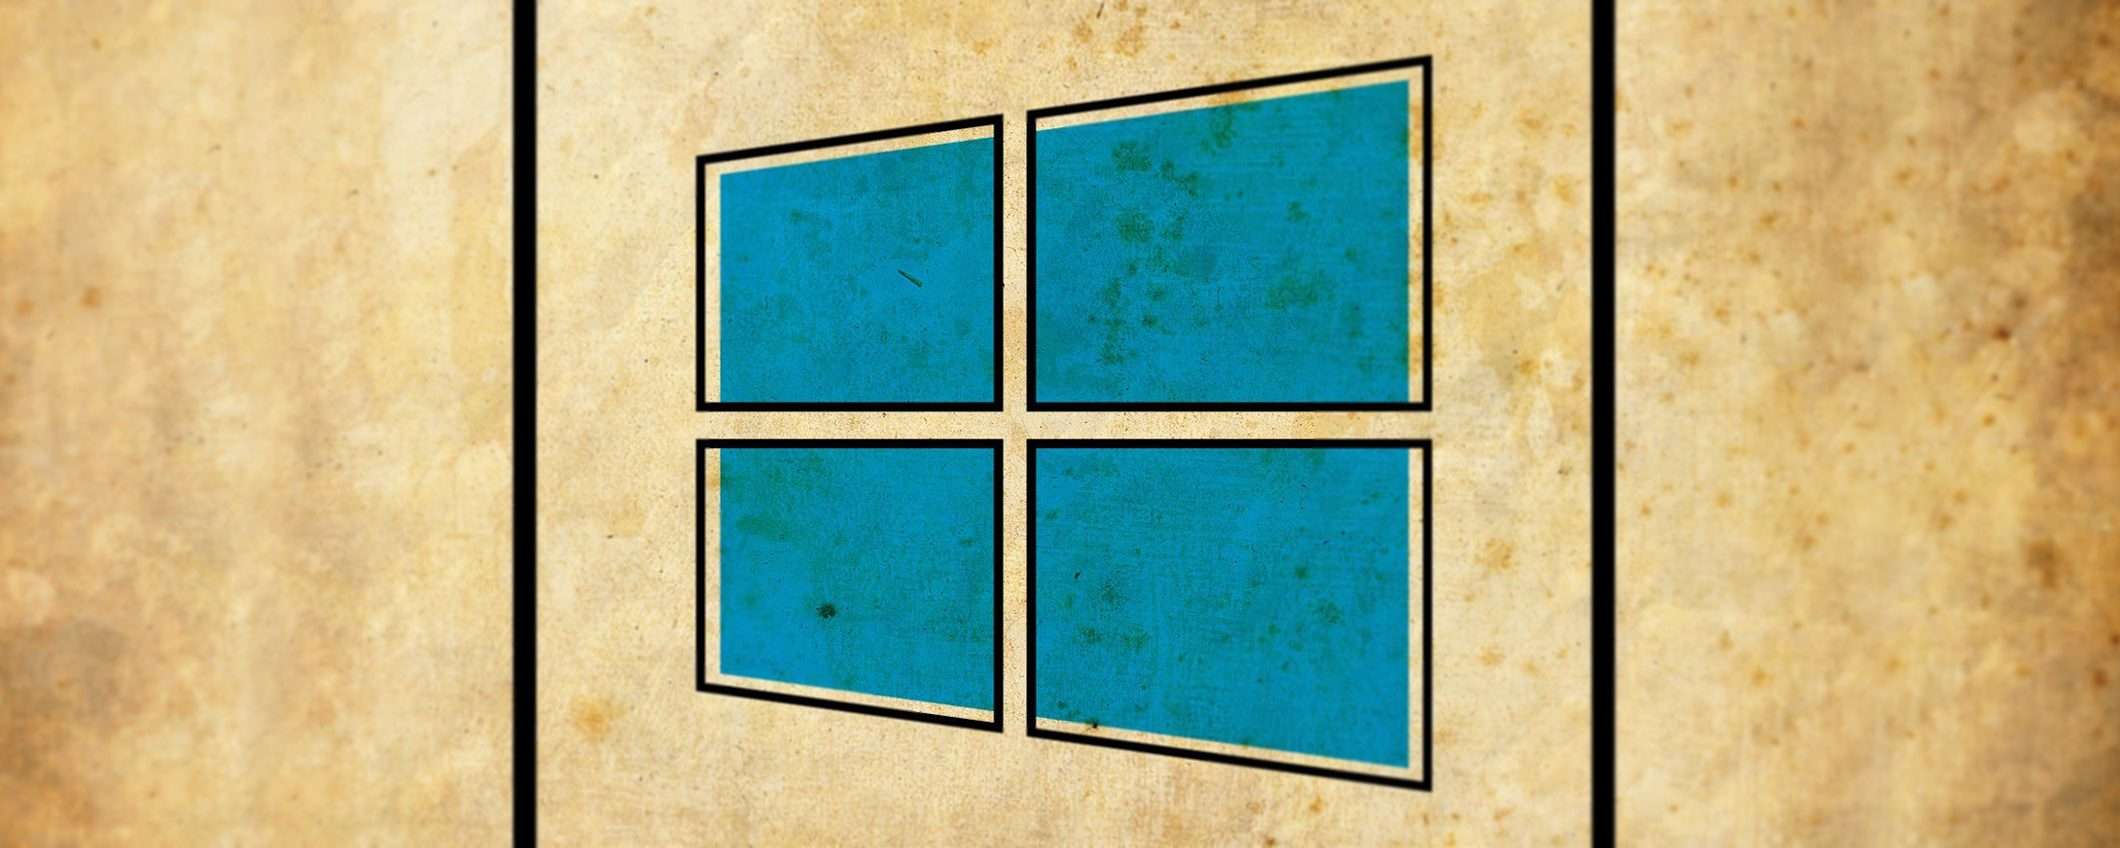 Offerte di luglio: licenze genuine Windows 10 a 12€, Office 22€: sconto del 91%!